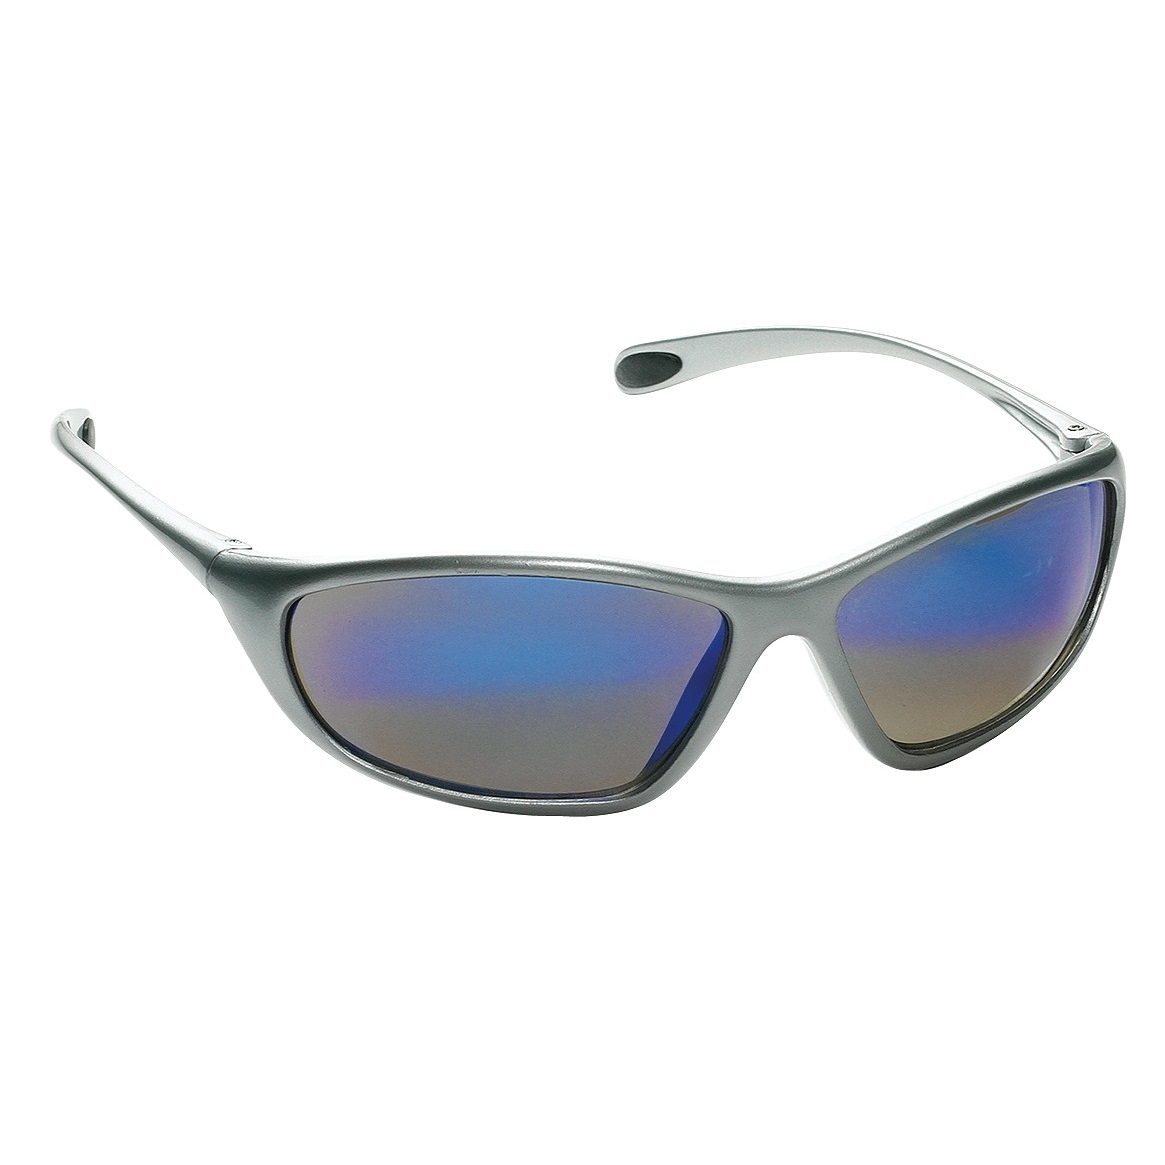 Spyder Safety Glasses, Silver Frame, Blue Mirror Lens